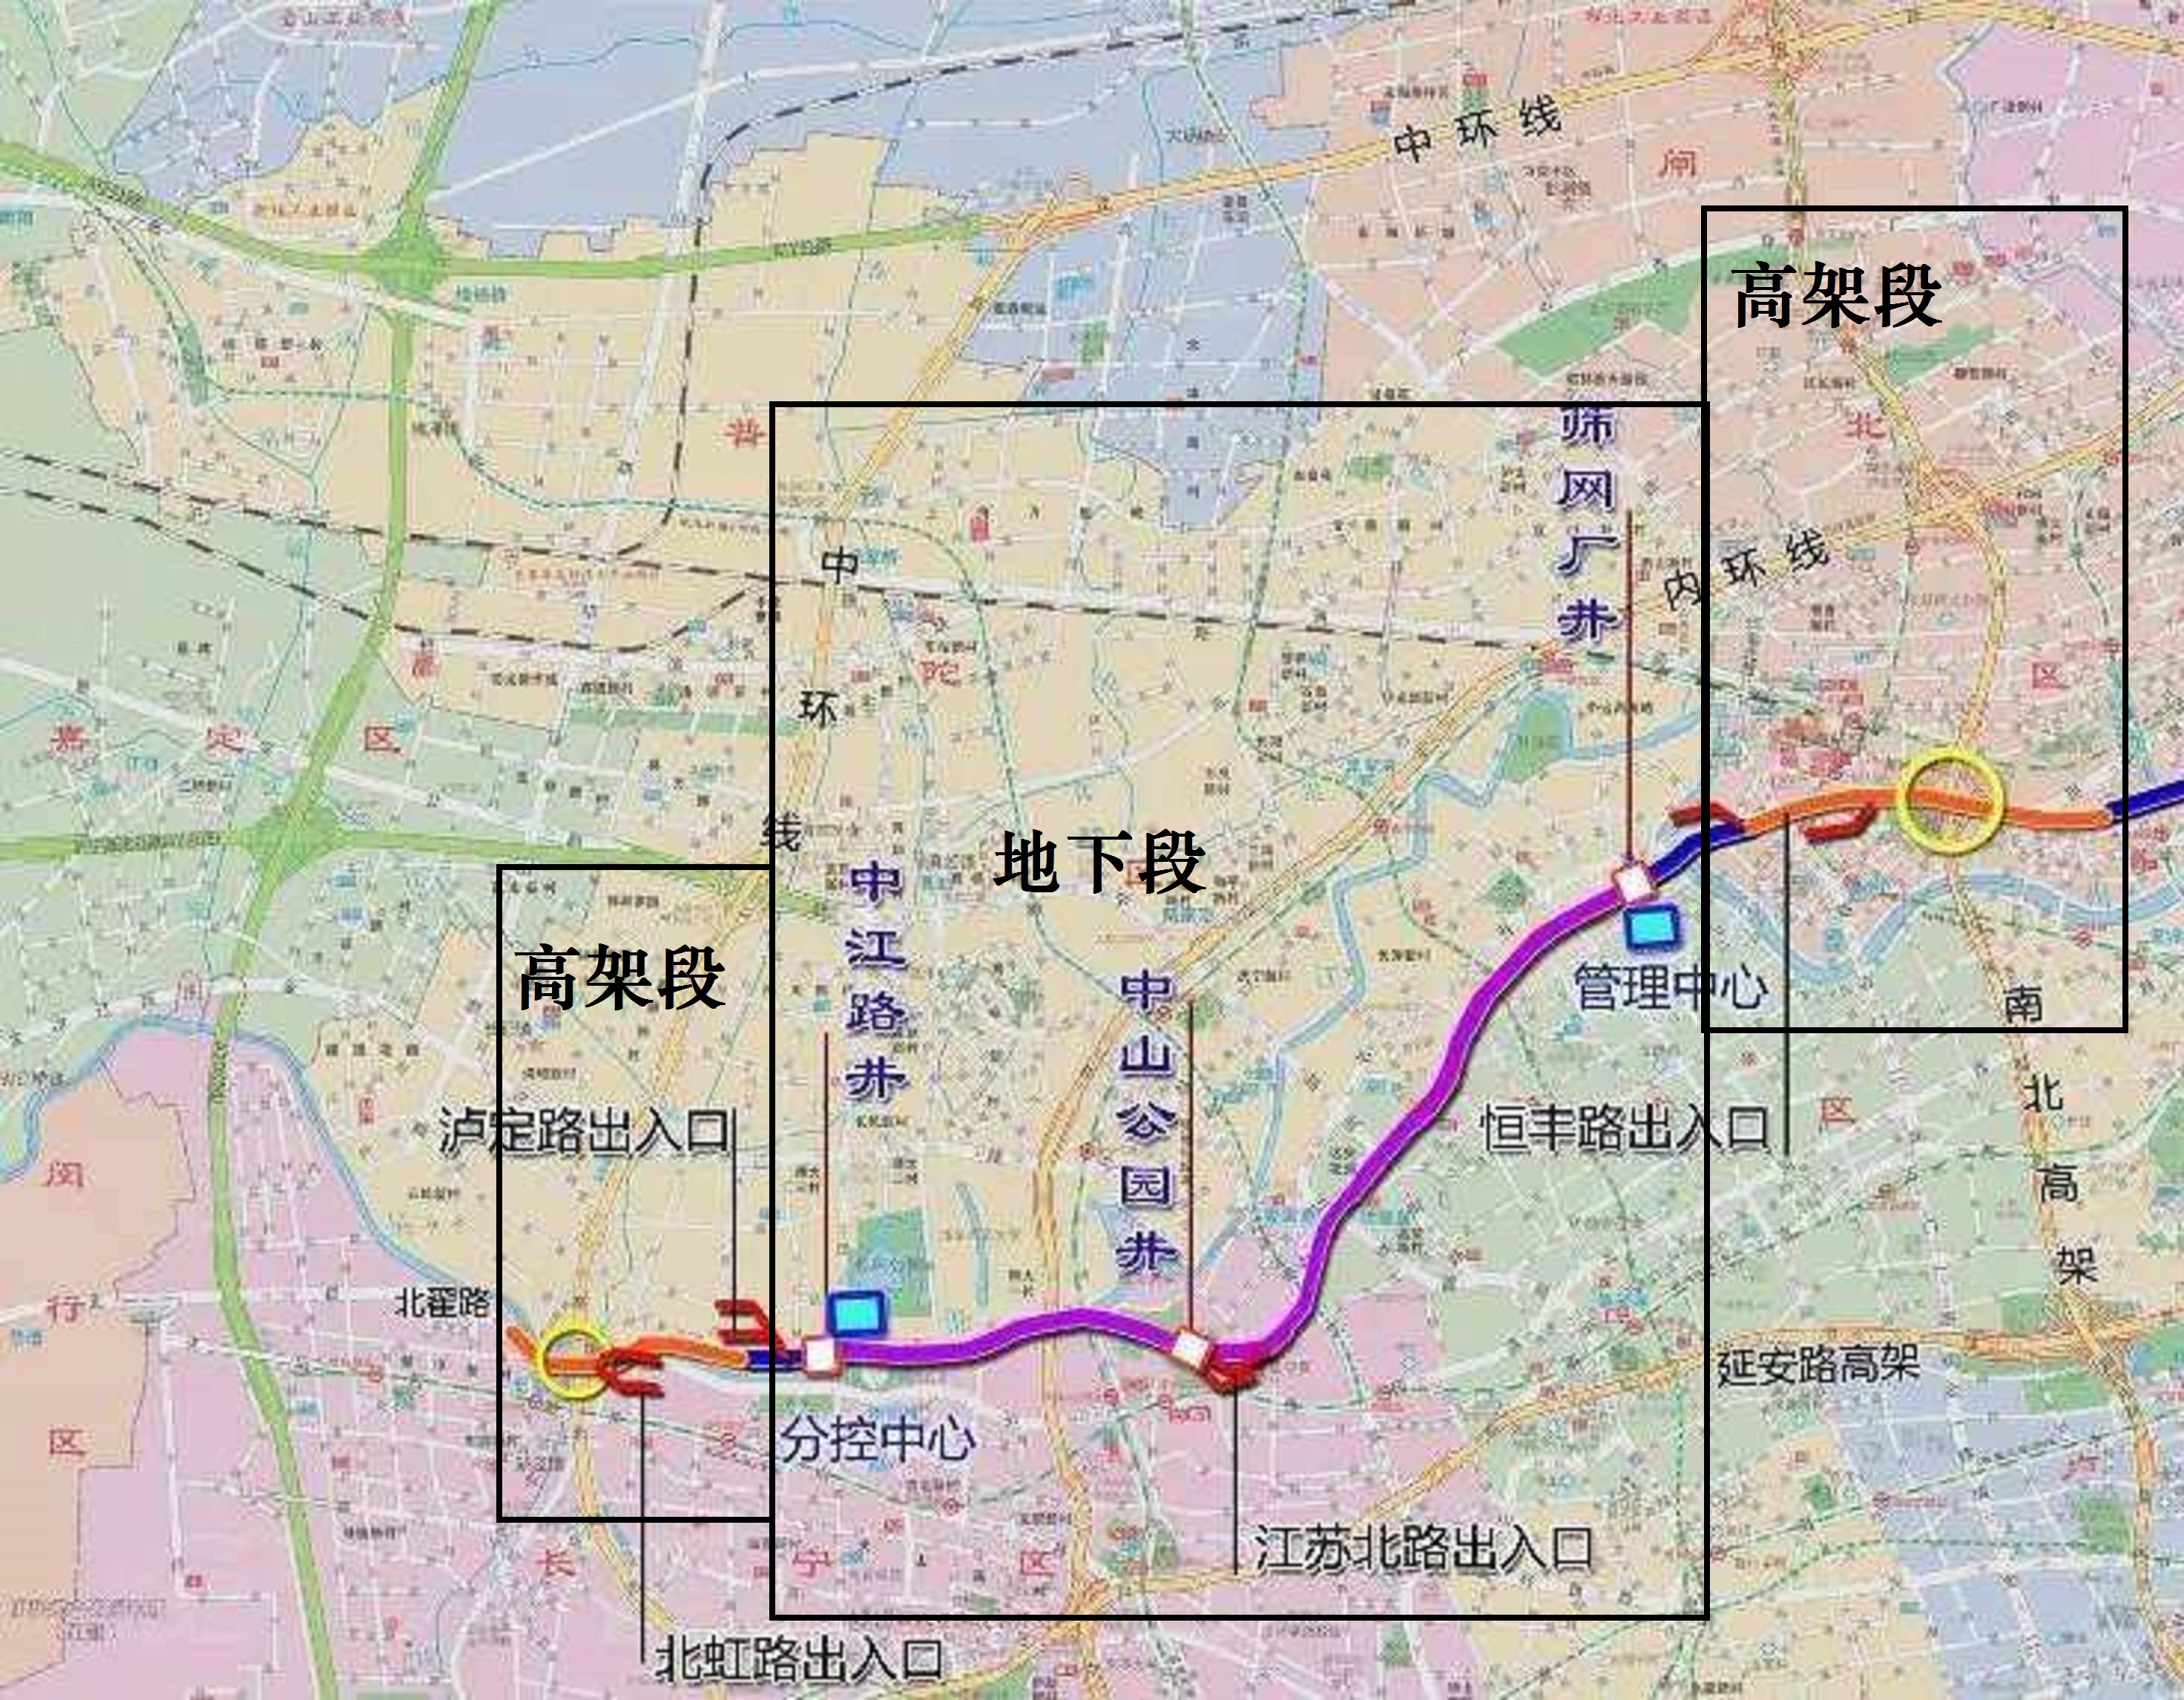 上海市区东西动脉北横通道的建设进展:高架段已经跨过苏州河